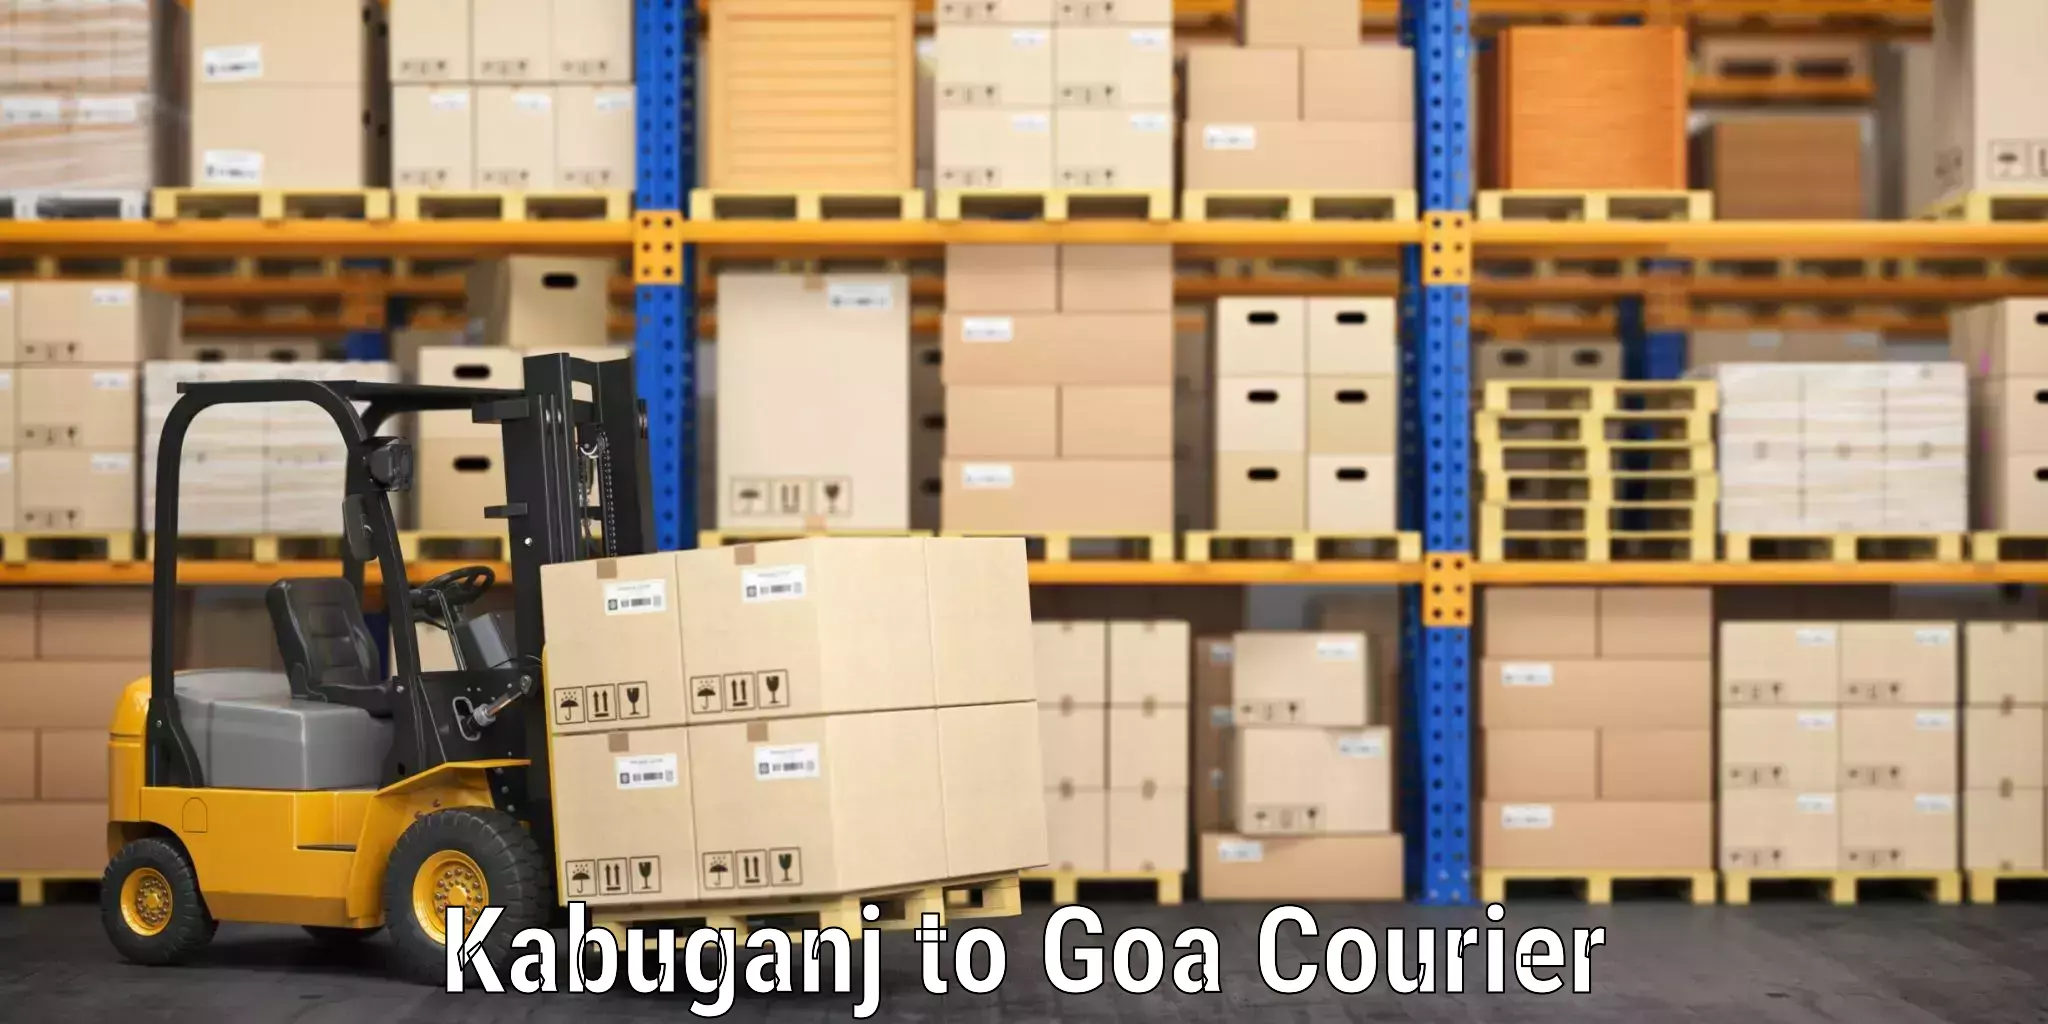 Hassle-free luggage shipping Kabuganj to Mormugao Port